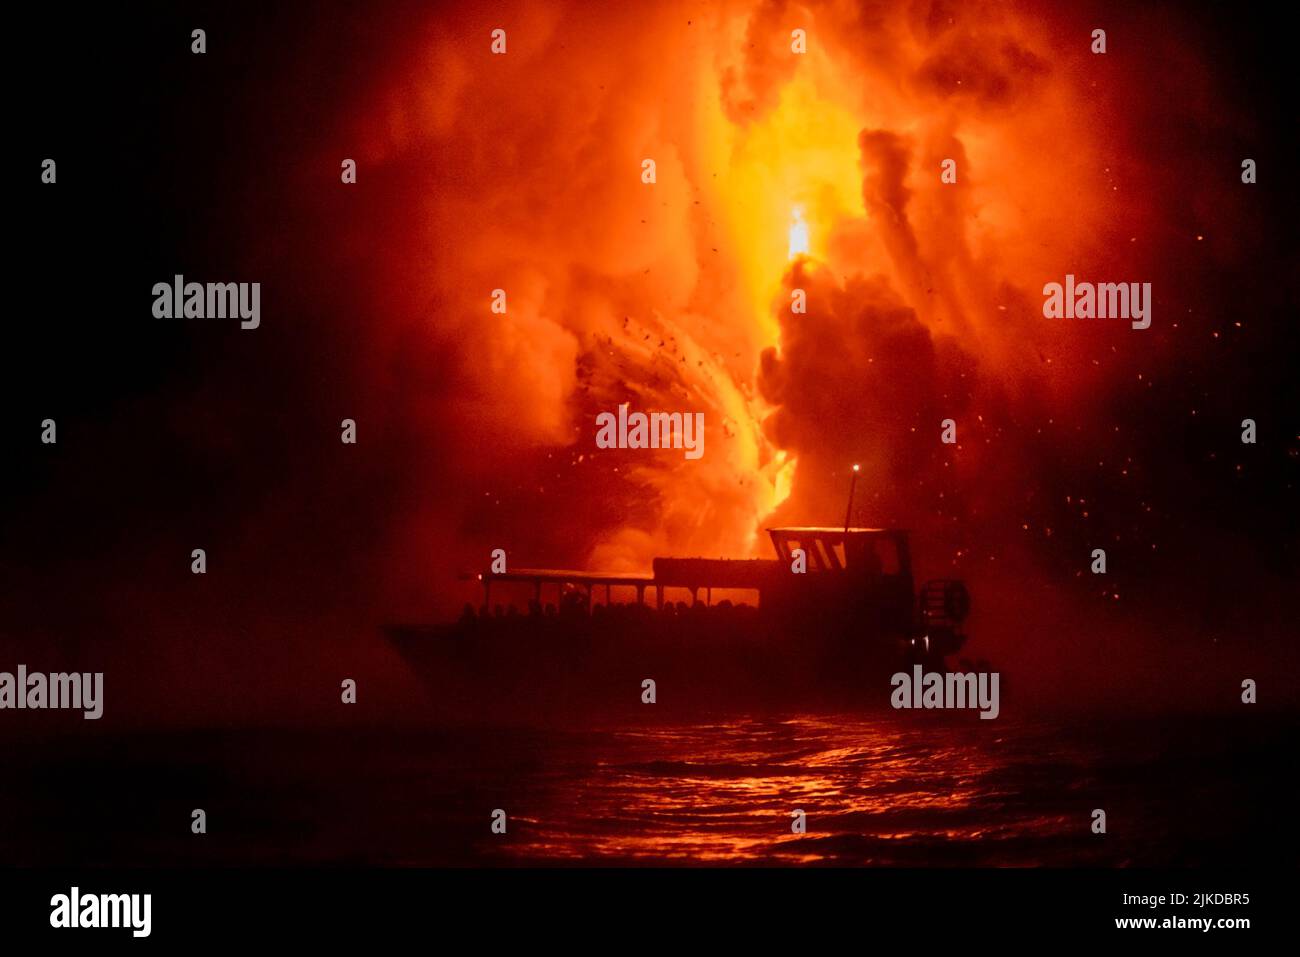 Un bateau touristique flotte en face de l'explosion de lave la nuit, donnant aux gens une vue sur la nature de mère dans sa fureur. Banque D'Images